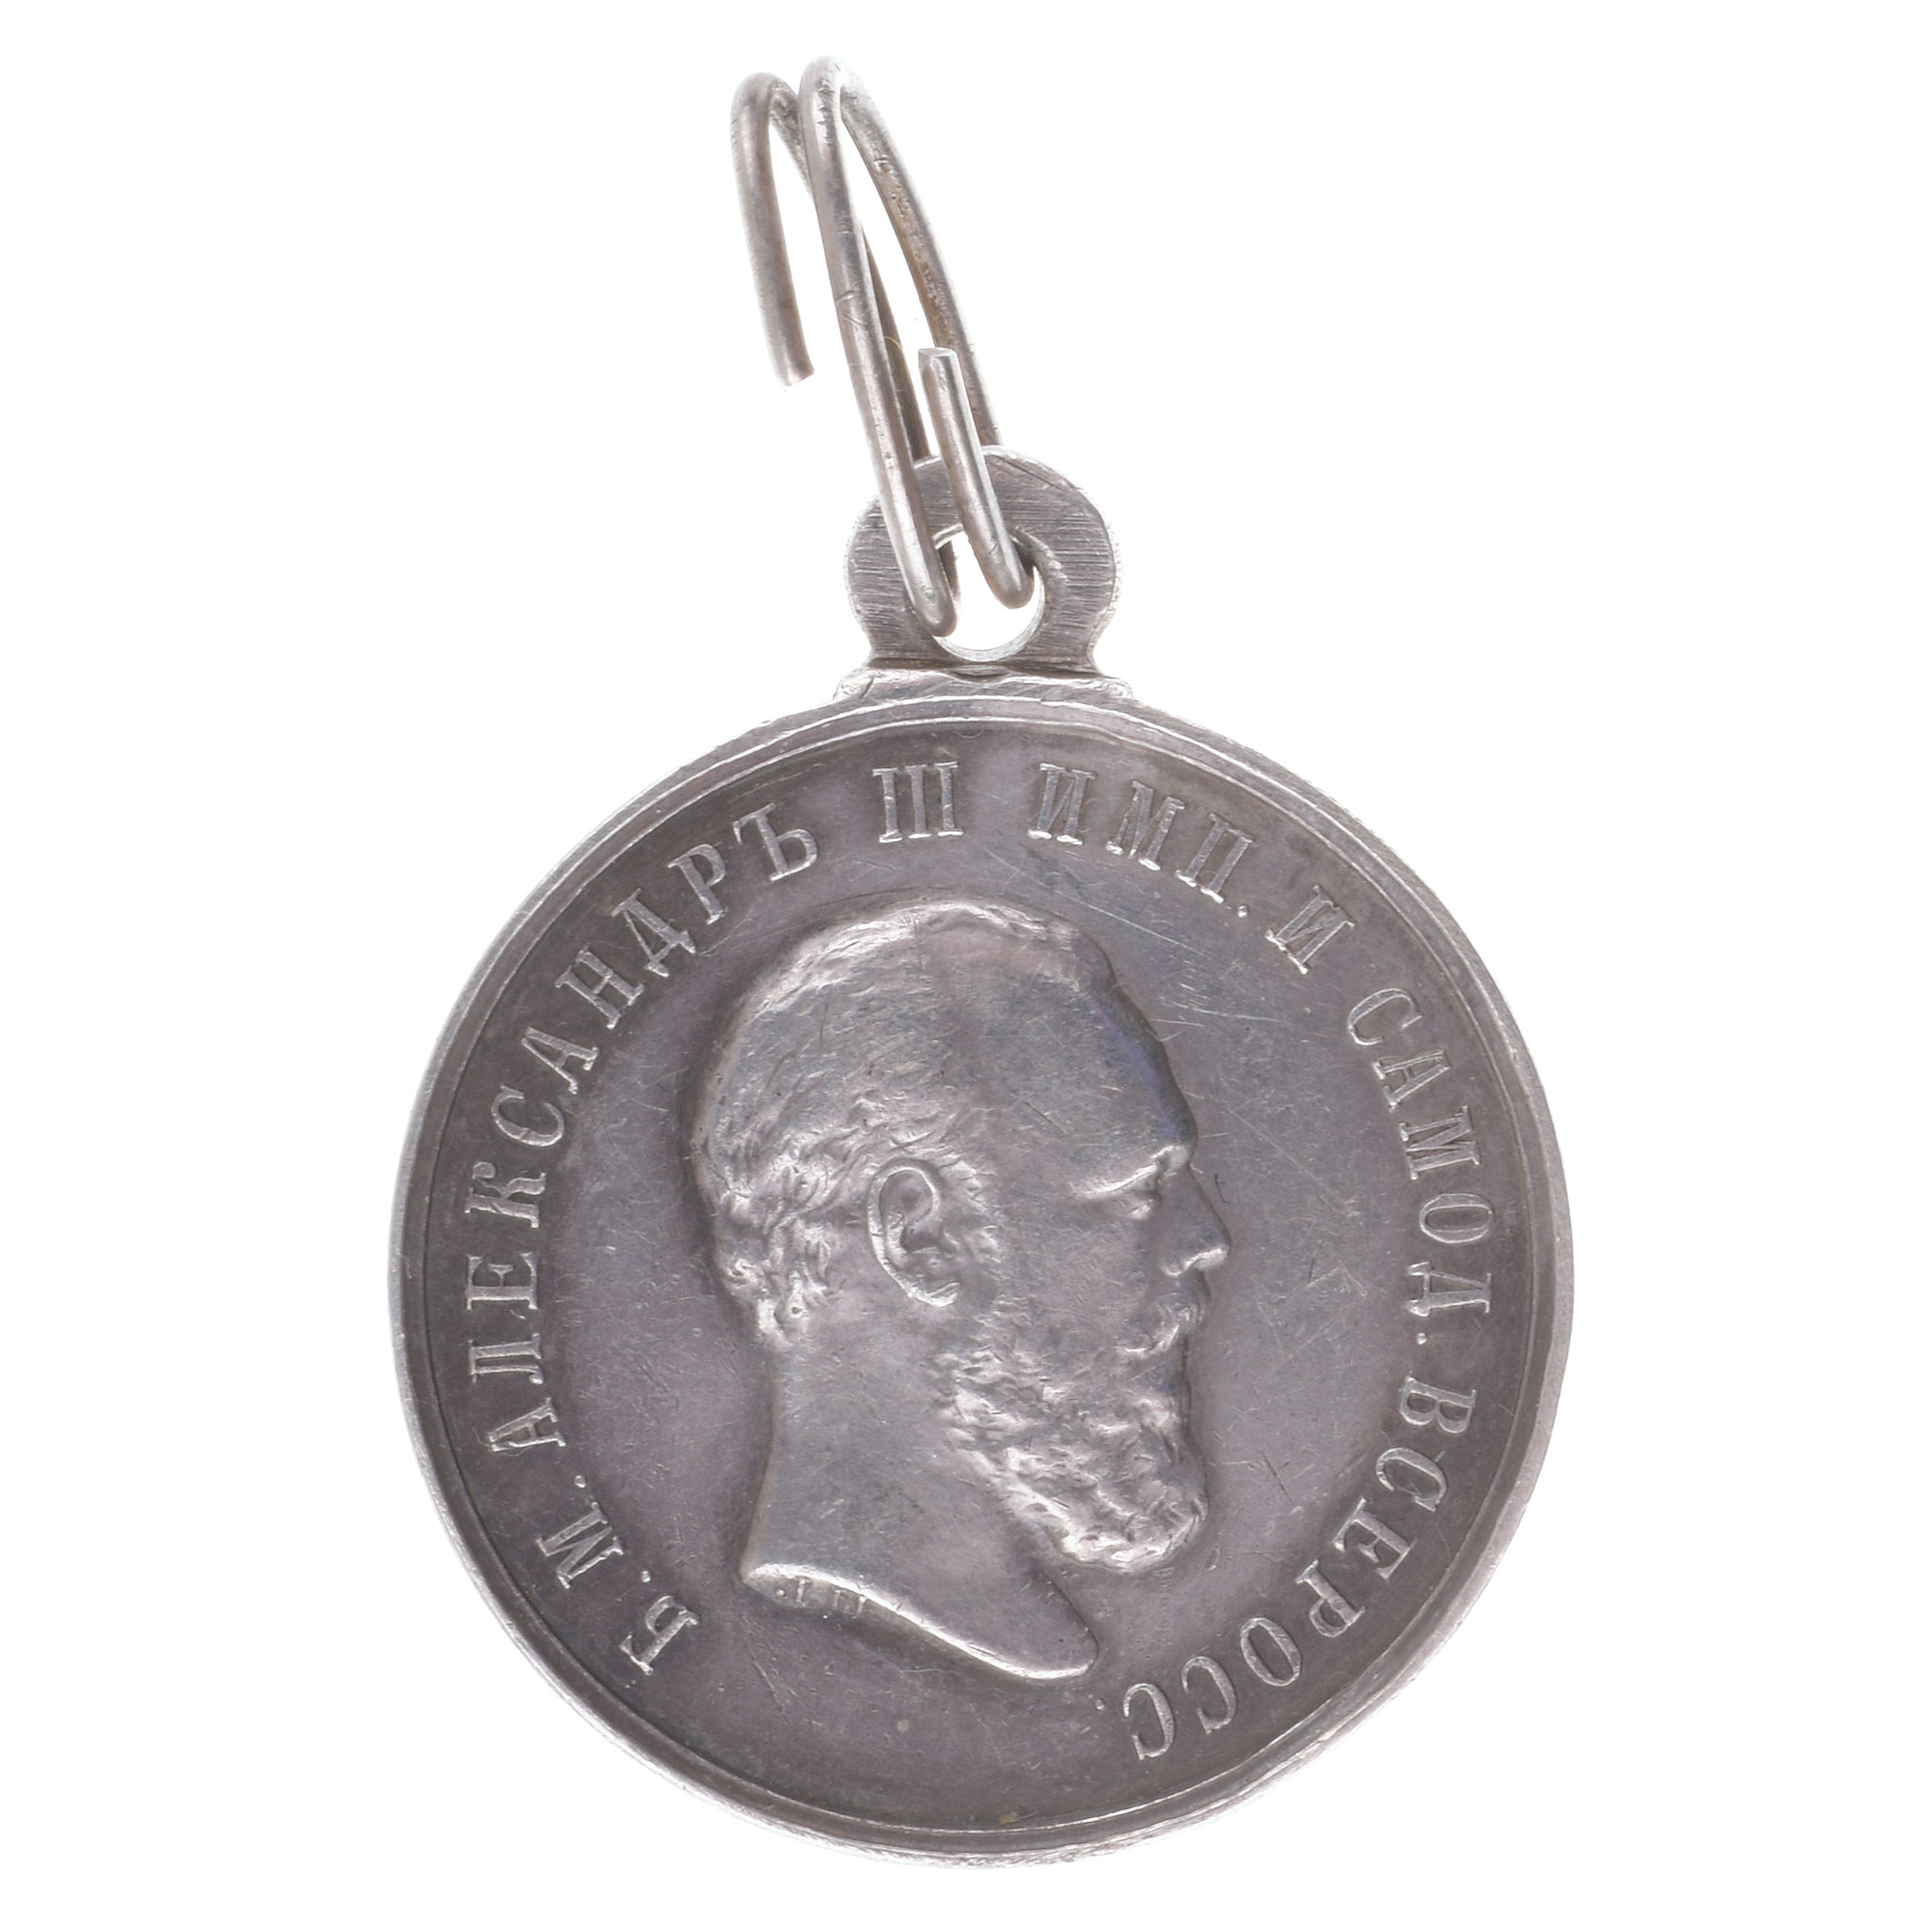 Медаль "За Усердие" с портретом Императора Александра III (1884 - 1888 гг). Нагрудная, 29 мм (в обрезе шеи  "ЛШ"). Серебро.